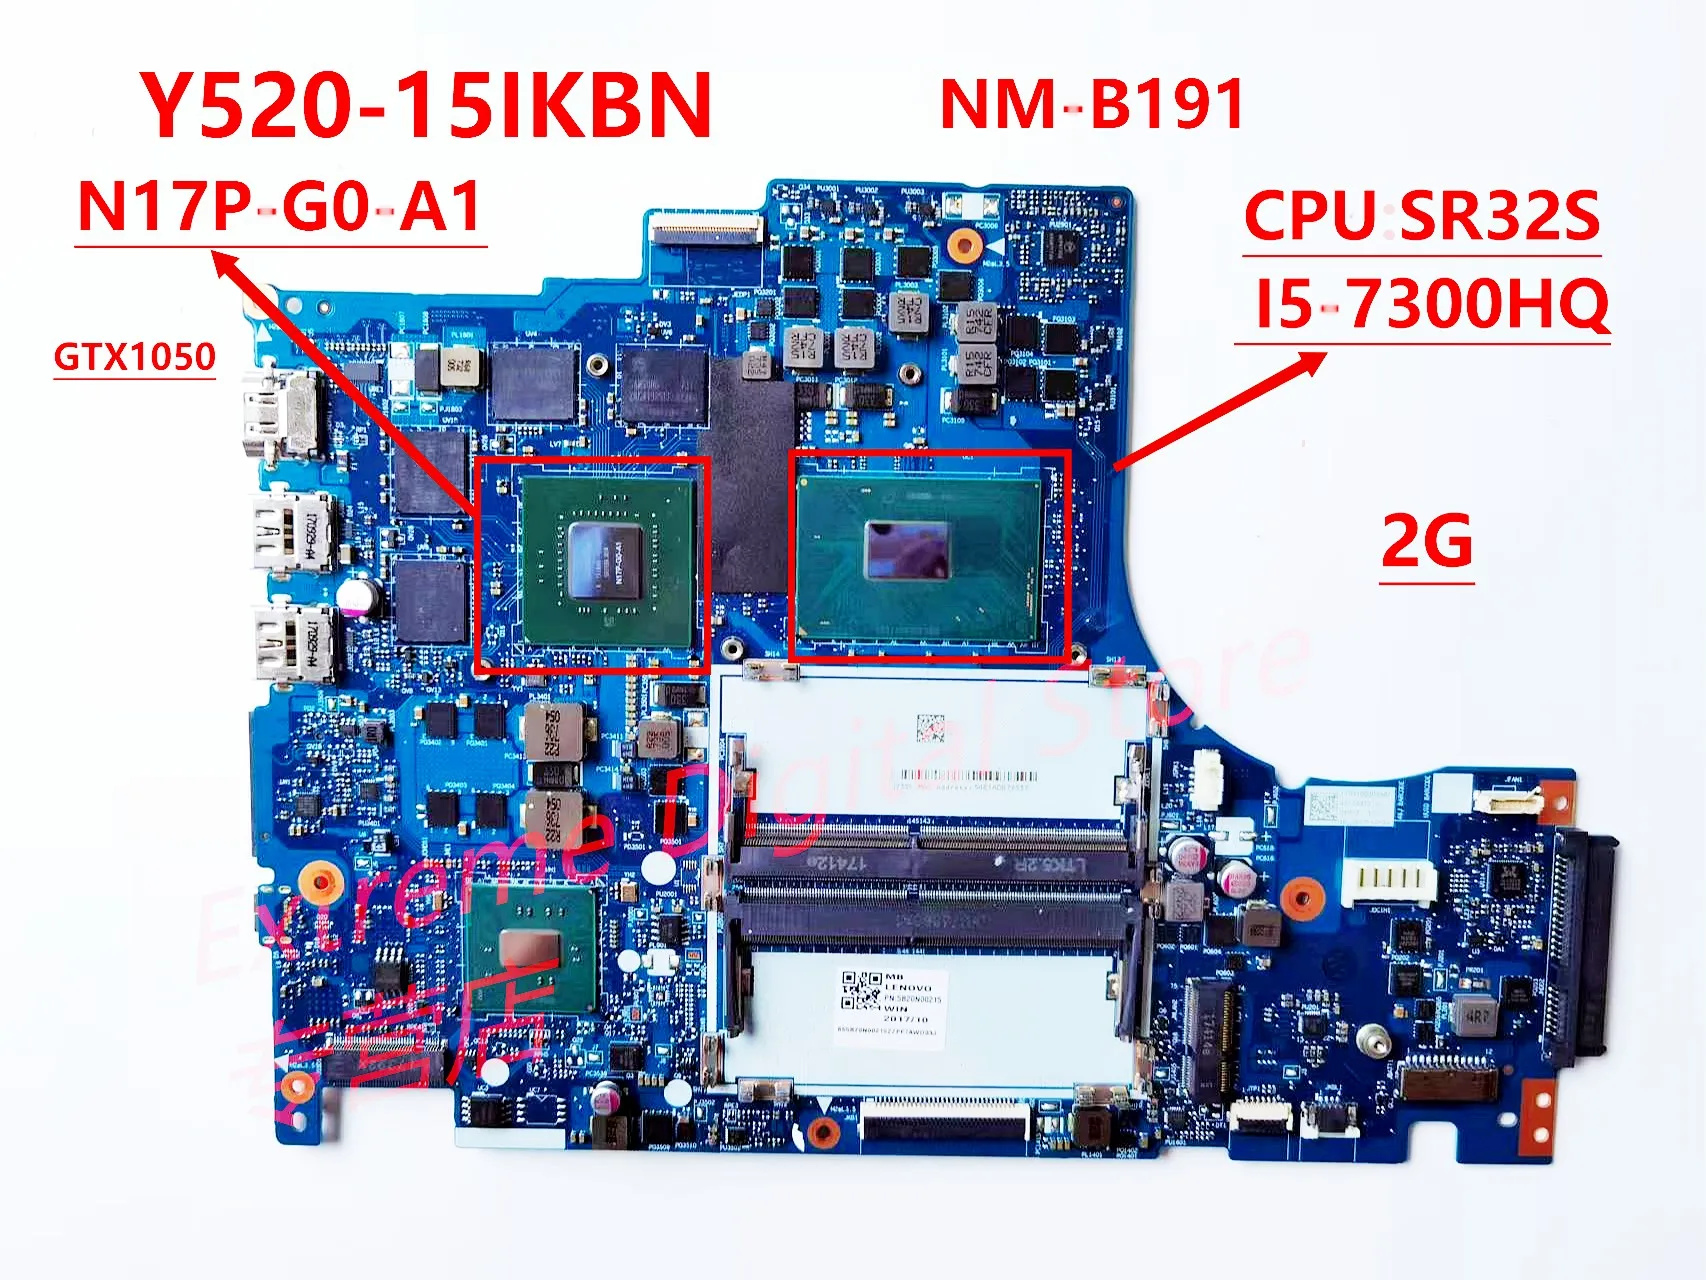 Материнская плата ноутбука nm-b191 применима к ноутбуку Lenovo y520-15ikbn i5-7300hq CPU 2G n17p-g0-a1/gtx1050 100% протестирована.